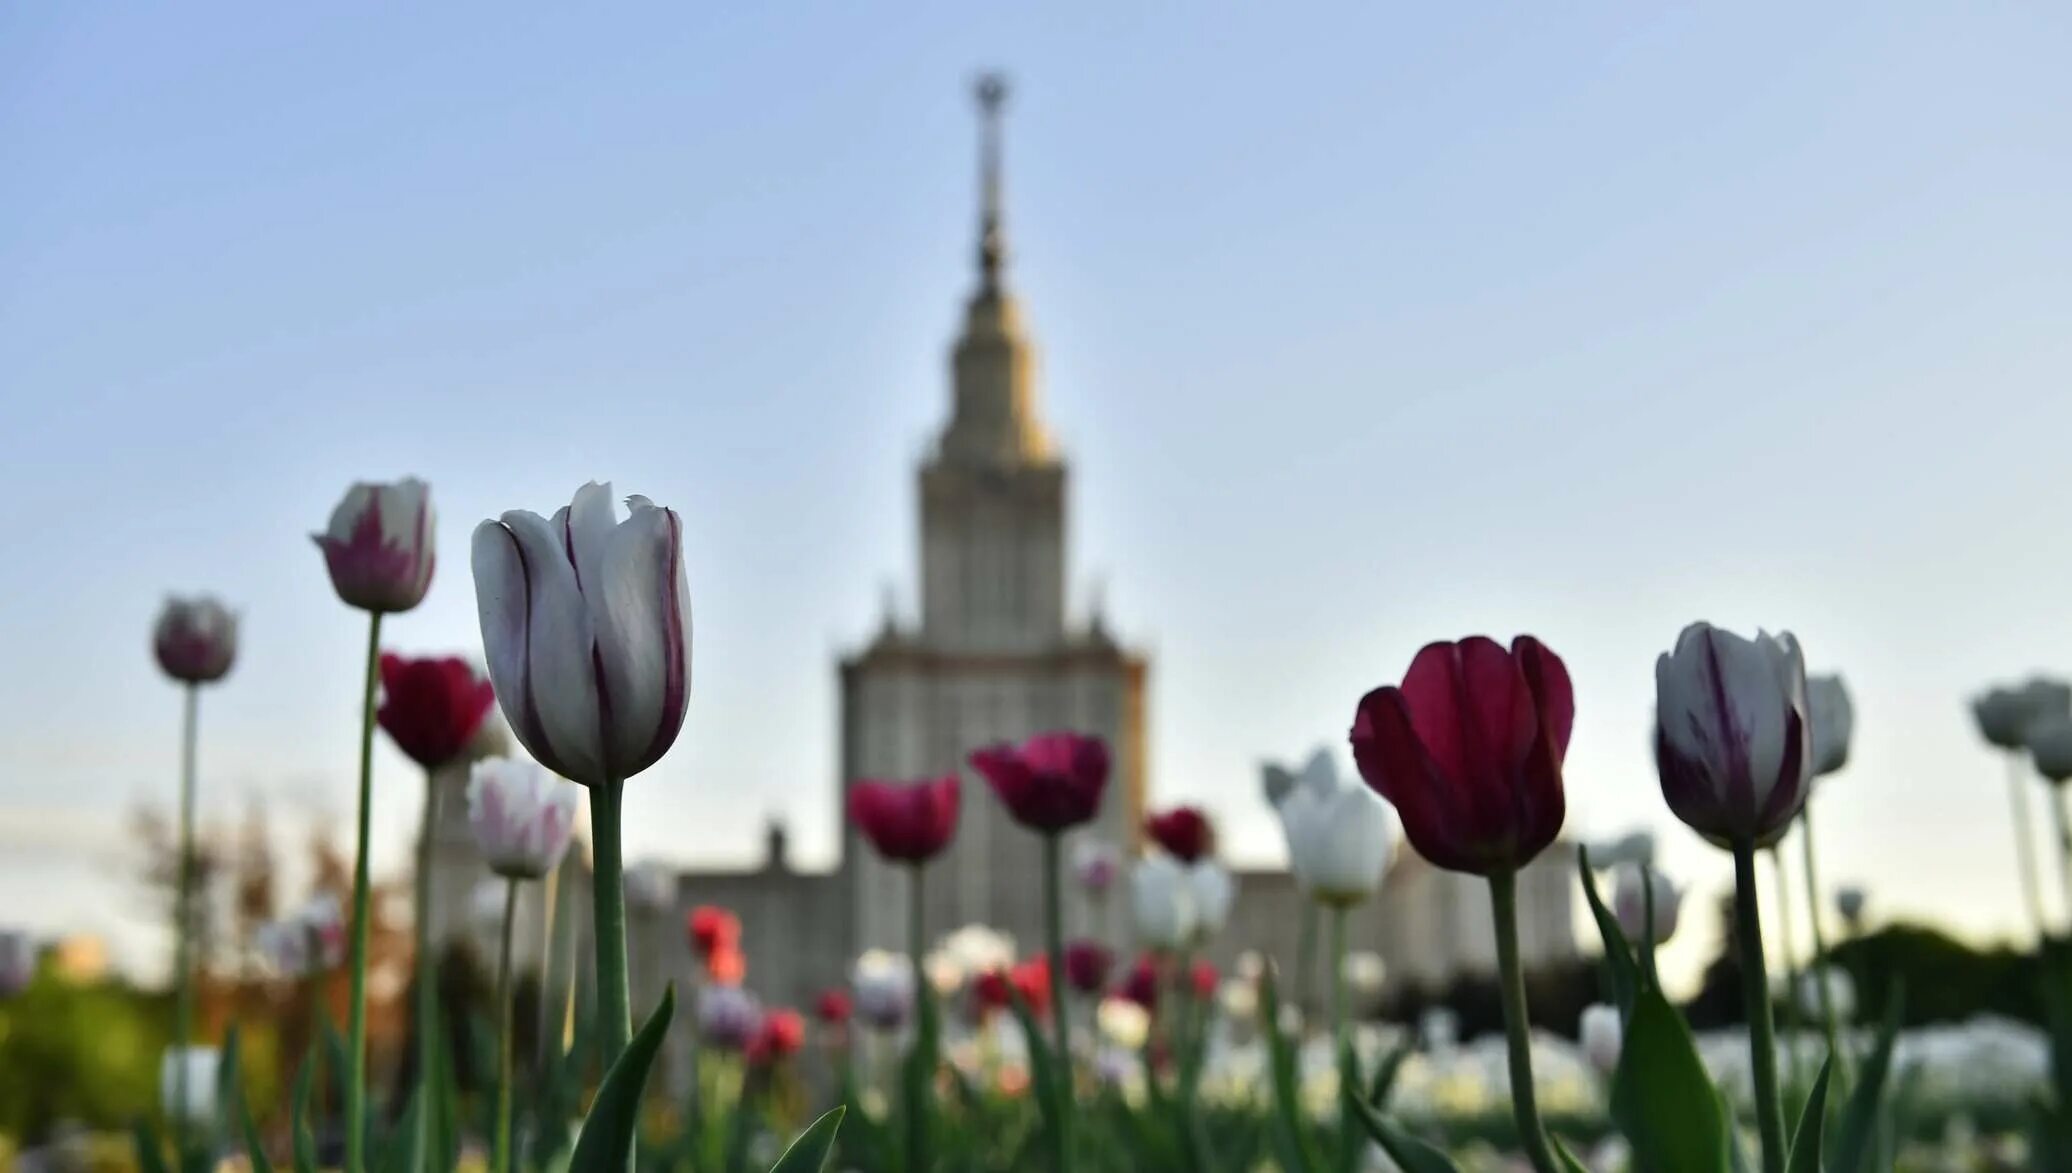 Мгу весной. Тюльпаны в Москве около МГУ.